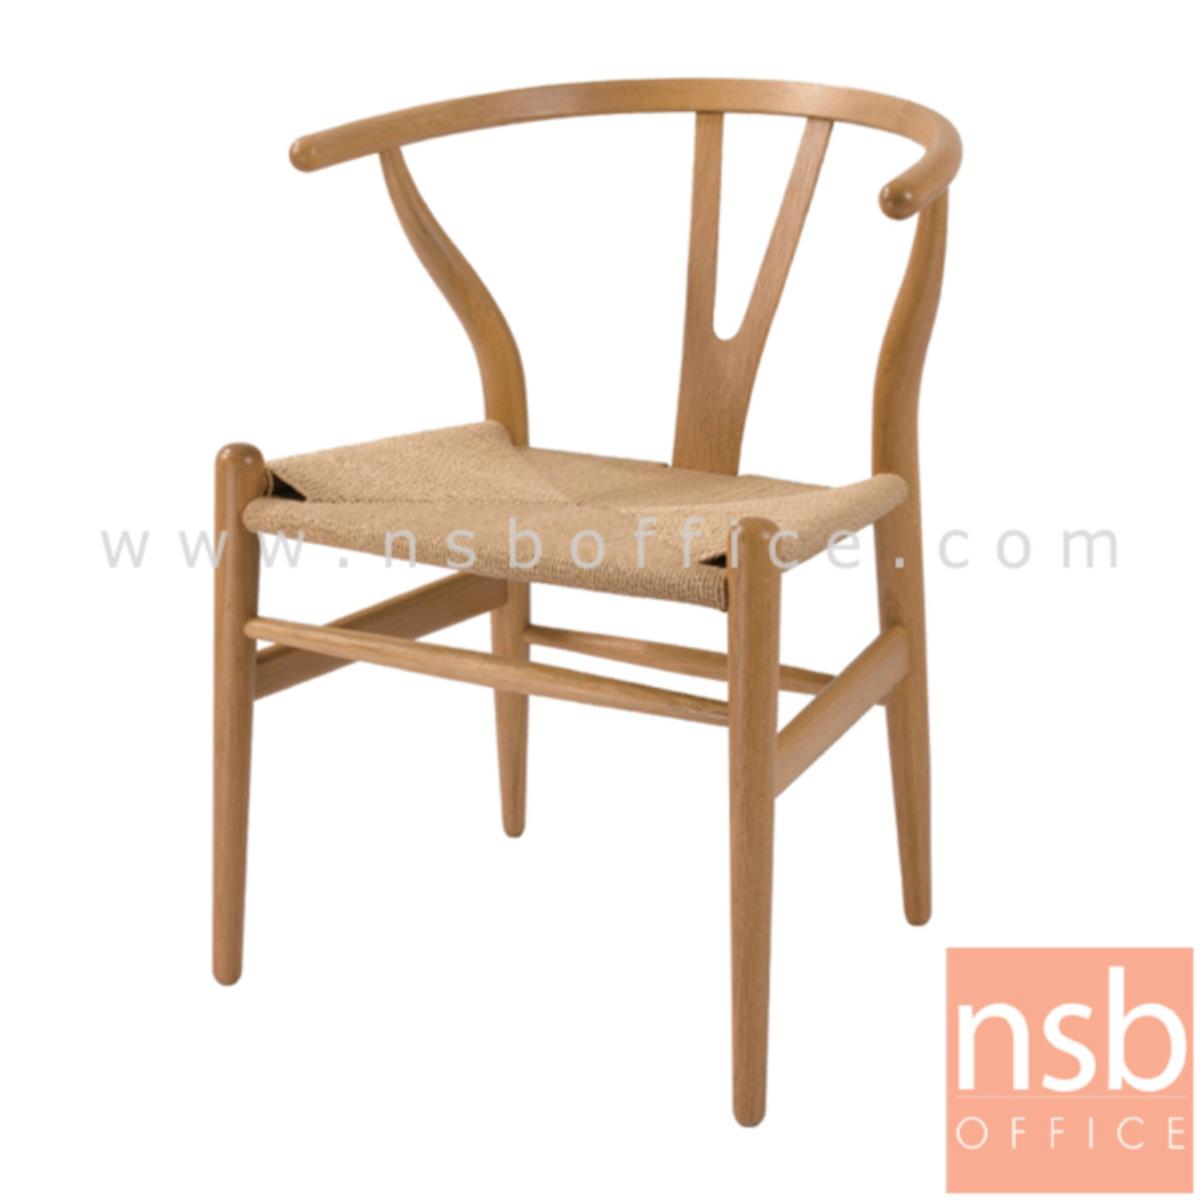 เก้าอี้โมเดิร์นหวายเทียม รุ่น PP92154 ขนาด 74W cm. โครงขาไม้